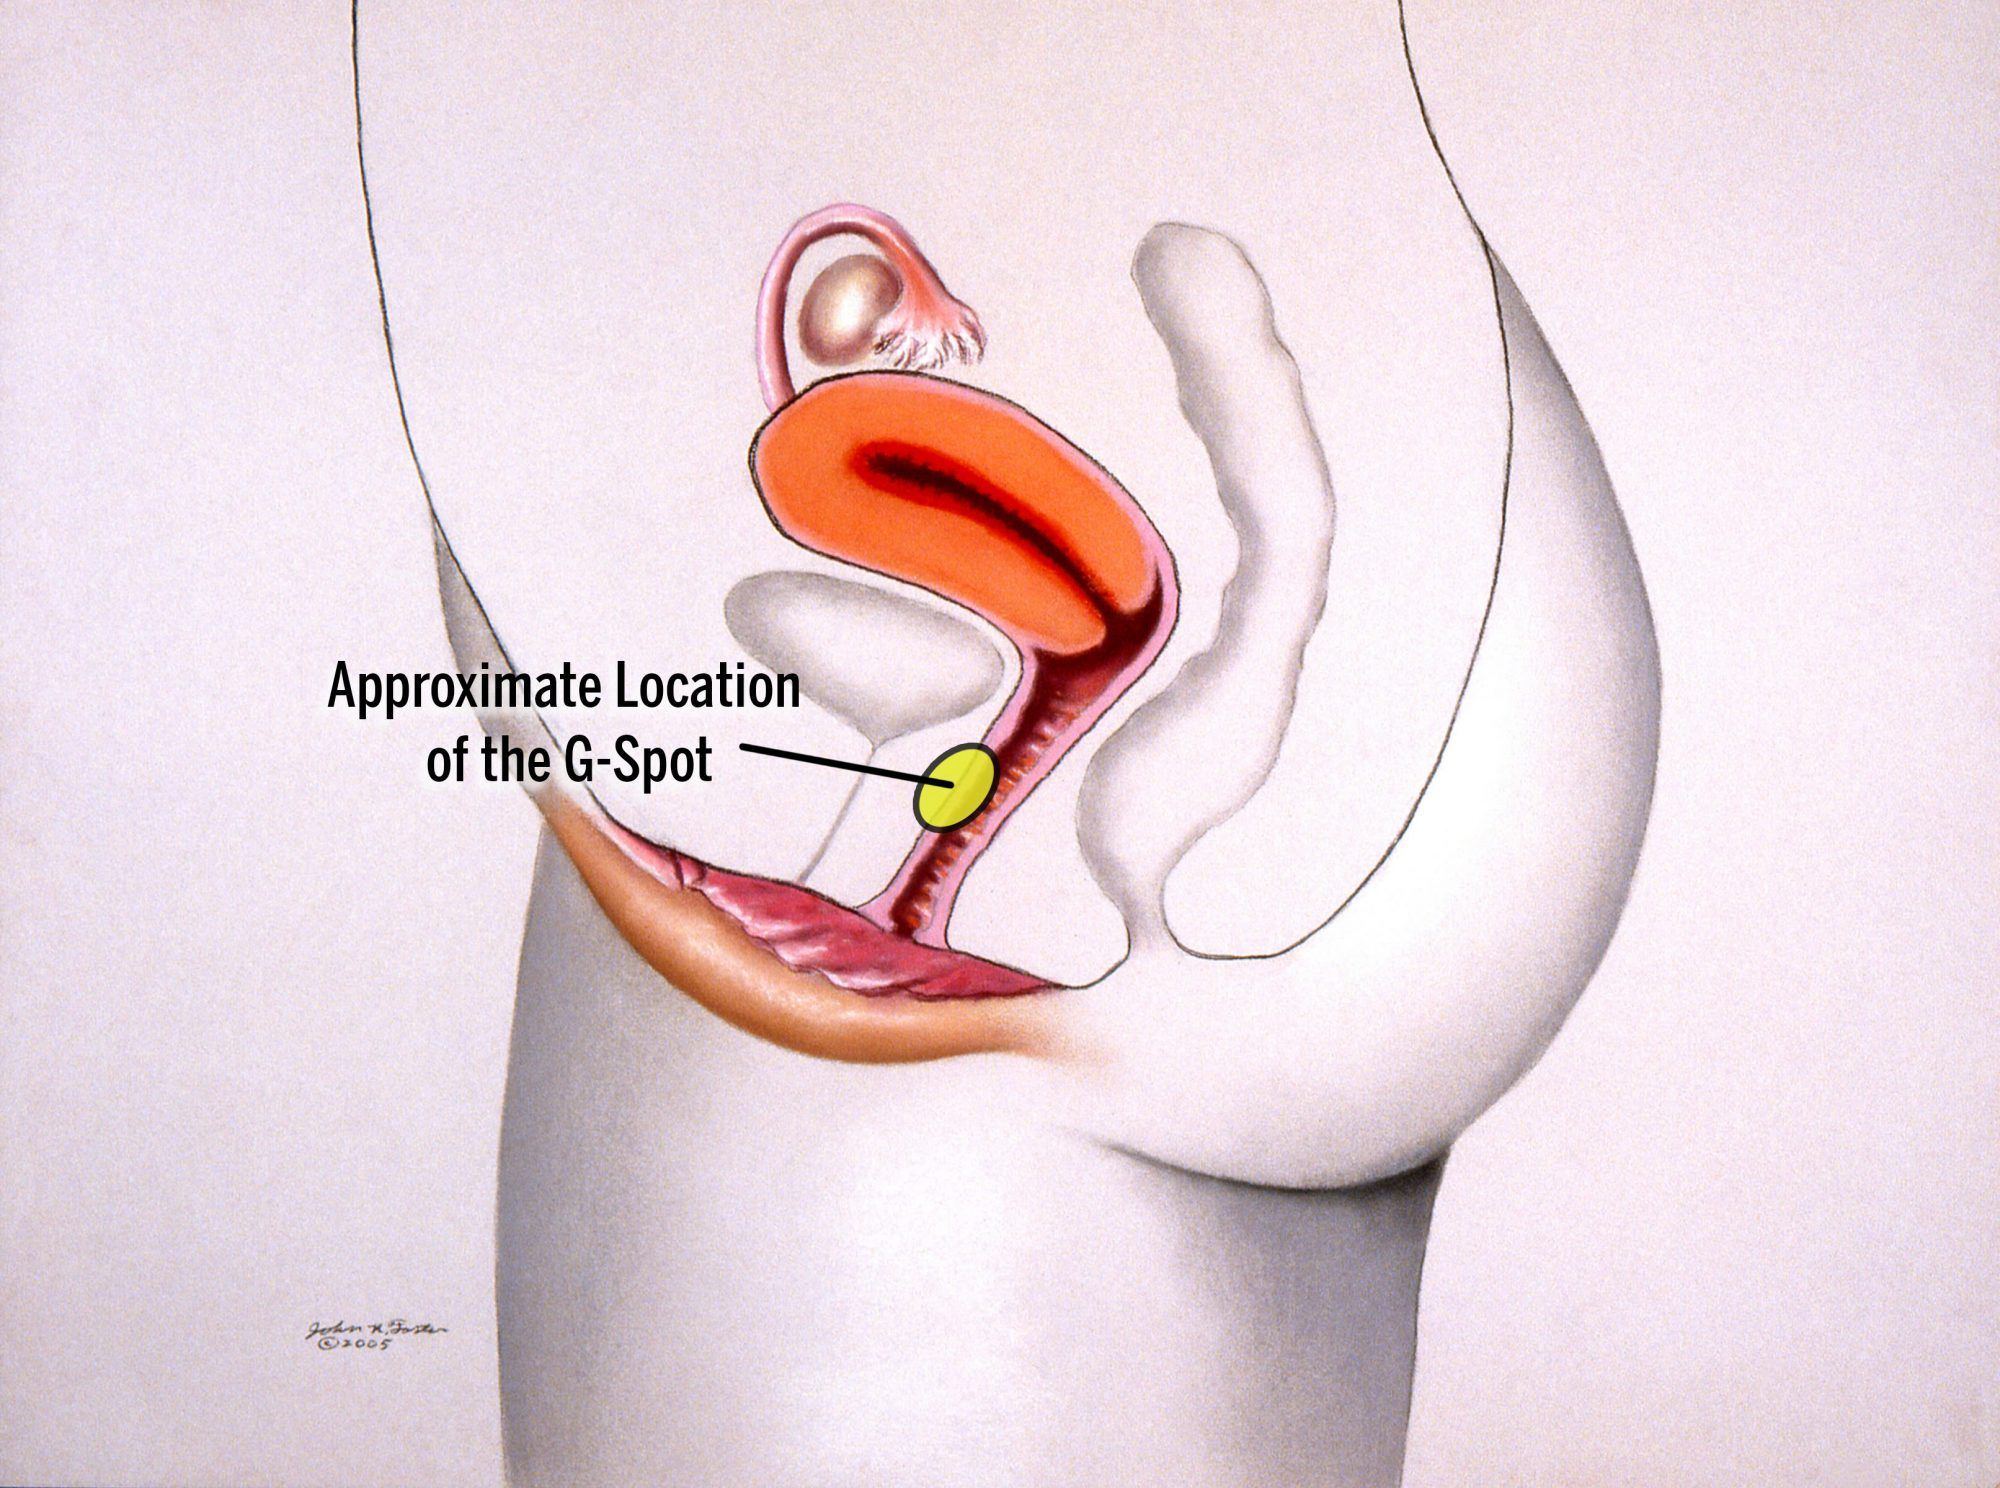 Anatomy of a g spot orgasm